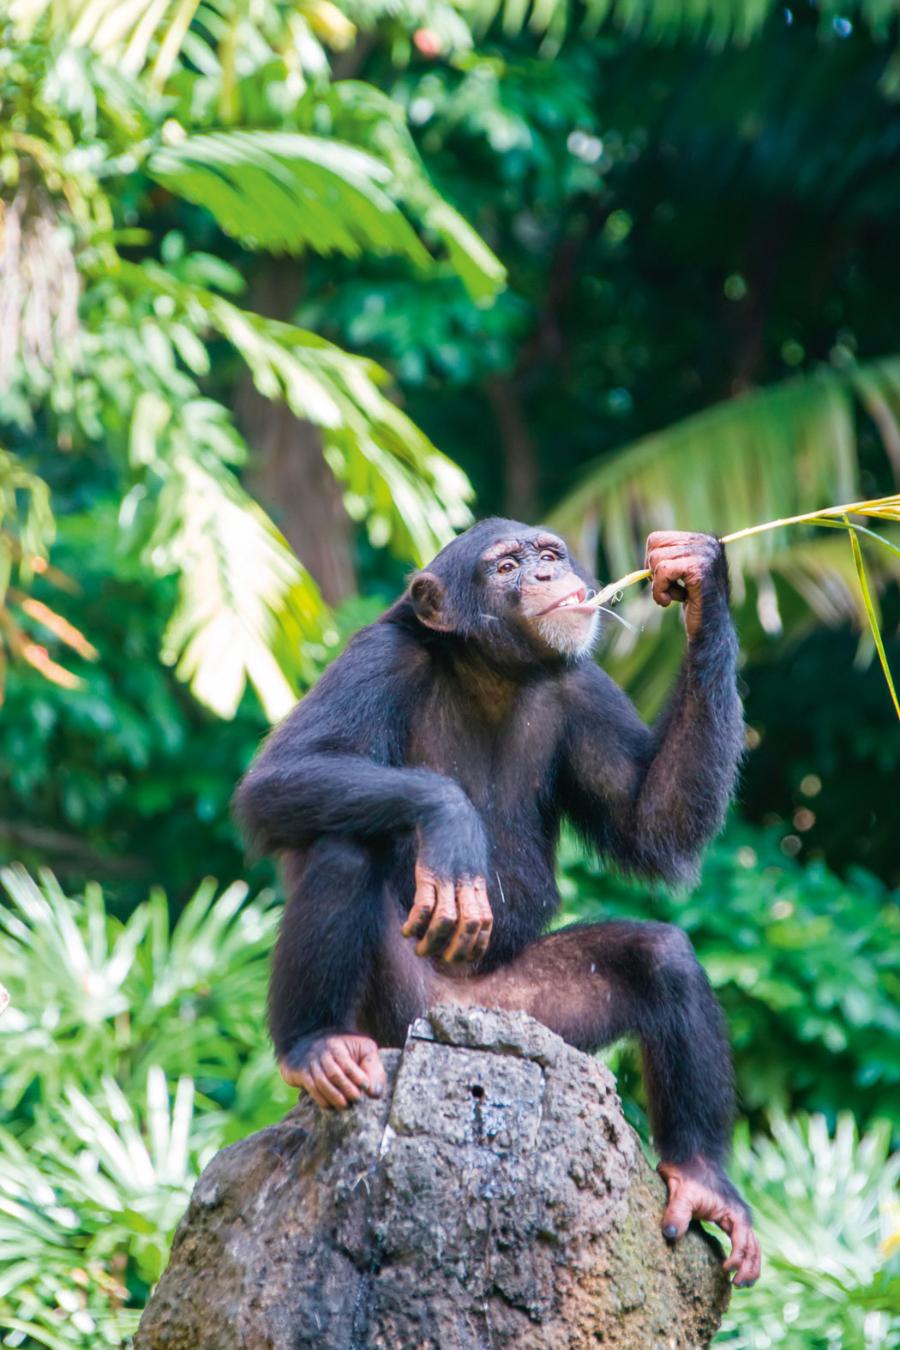 Wydłubywanie pożywienia z dziury w kamieniu. Szympansy korzystają jeszcze np. z kamiennych i drewnianych narzędzi do rozdrabniania twardych owoców.